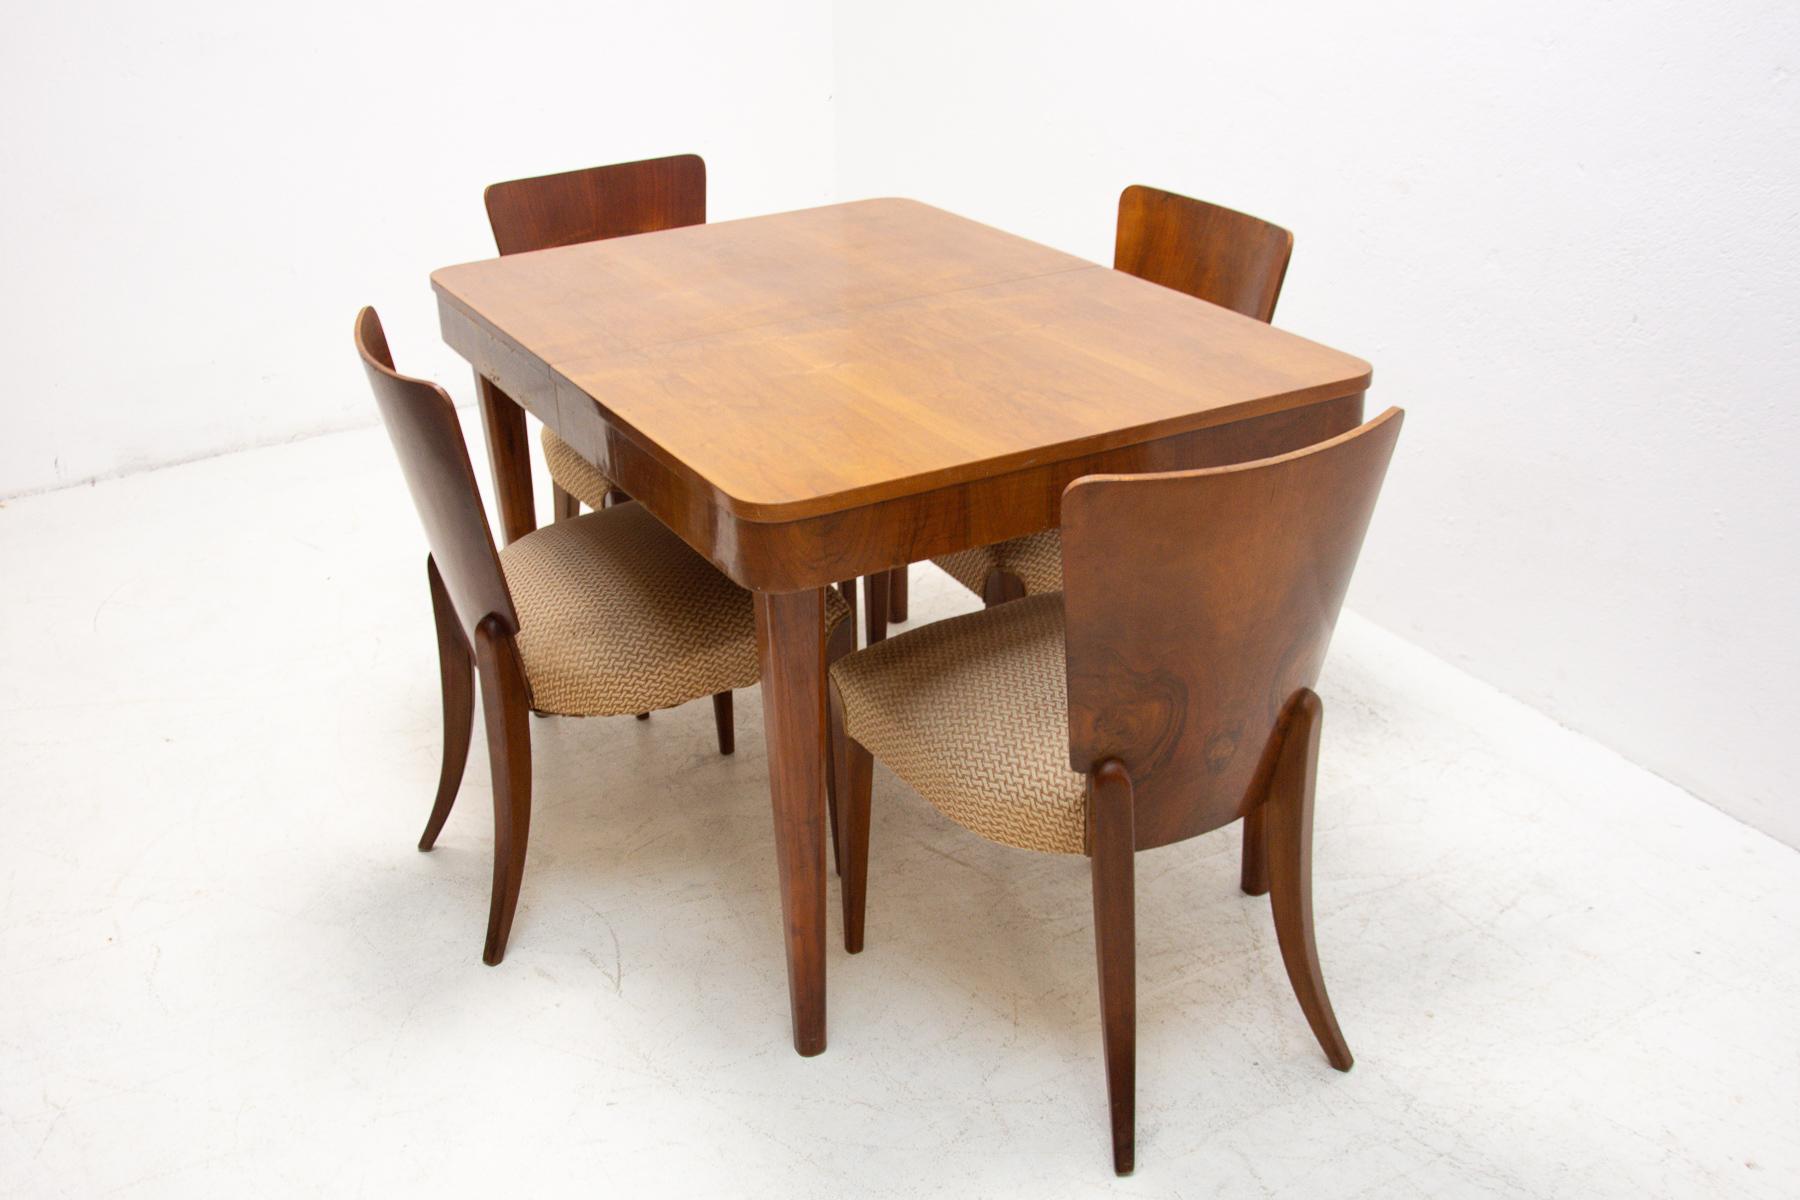 Cette table à manger réglable a été conçue et fabriquée dans les années 1950 dans l'ancienne Tchécoslovaquie. Il a été conçu par Jindrich Halabala pour ÚP Závody Brno. Le matériau est une combinaison de bois massif et de placage en noyer. La table